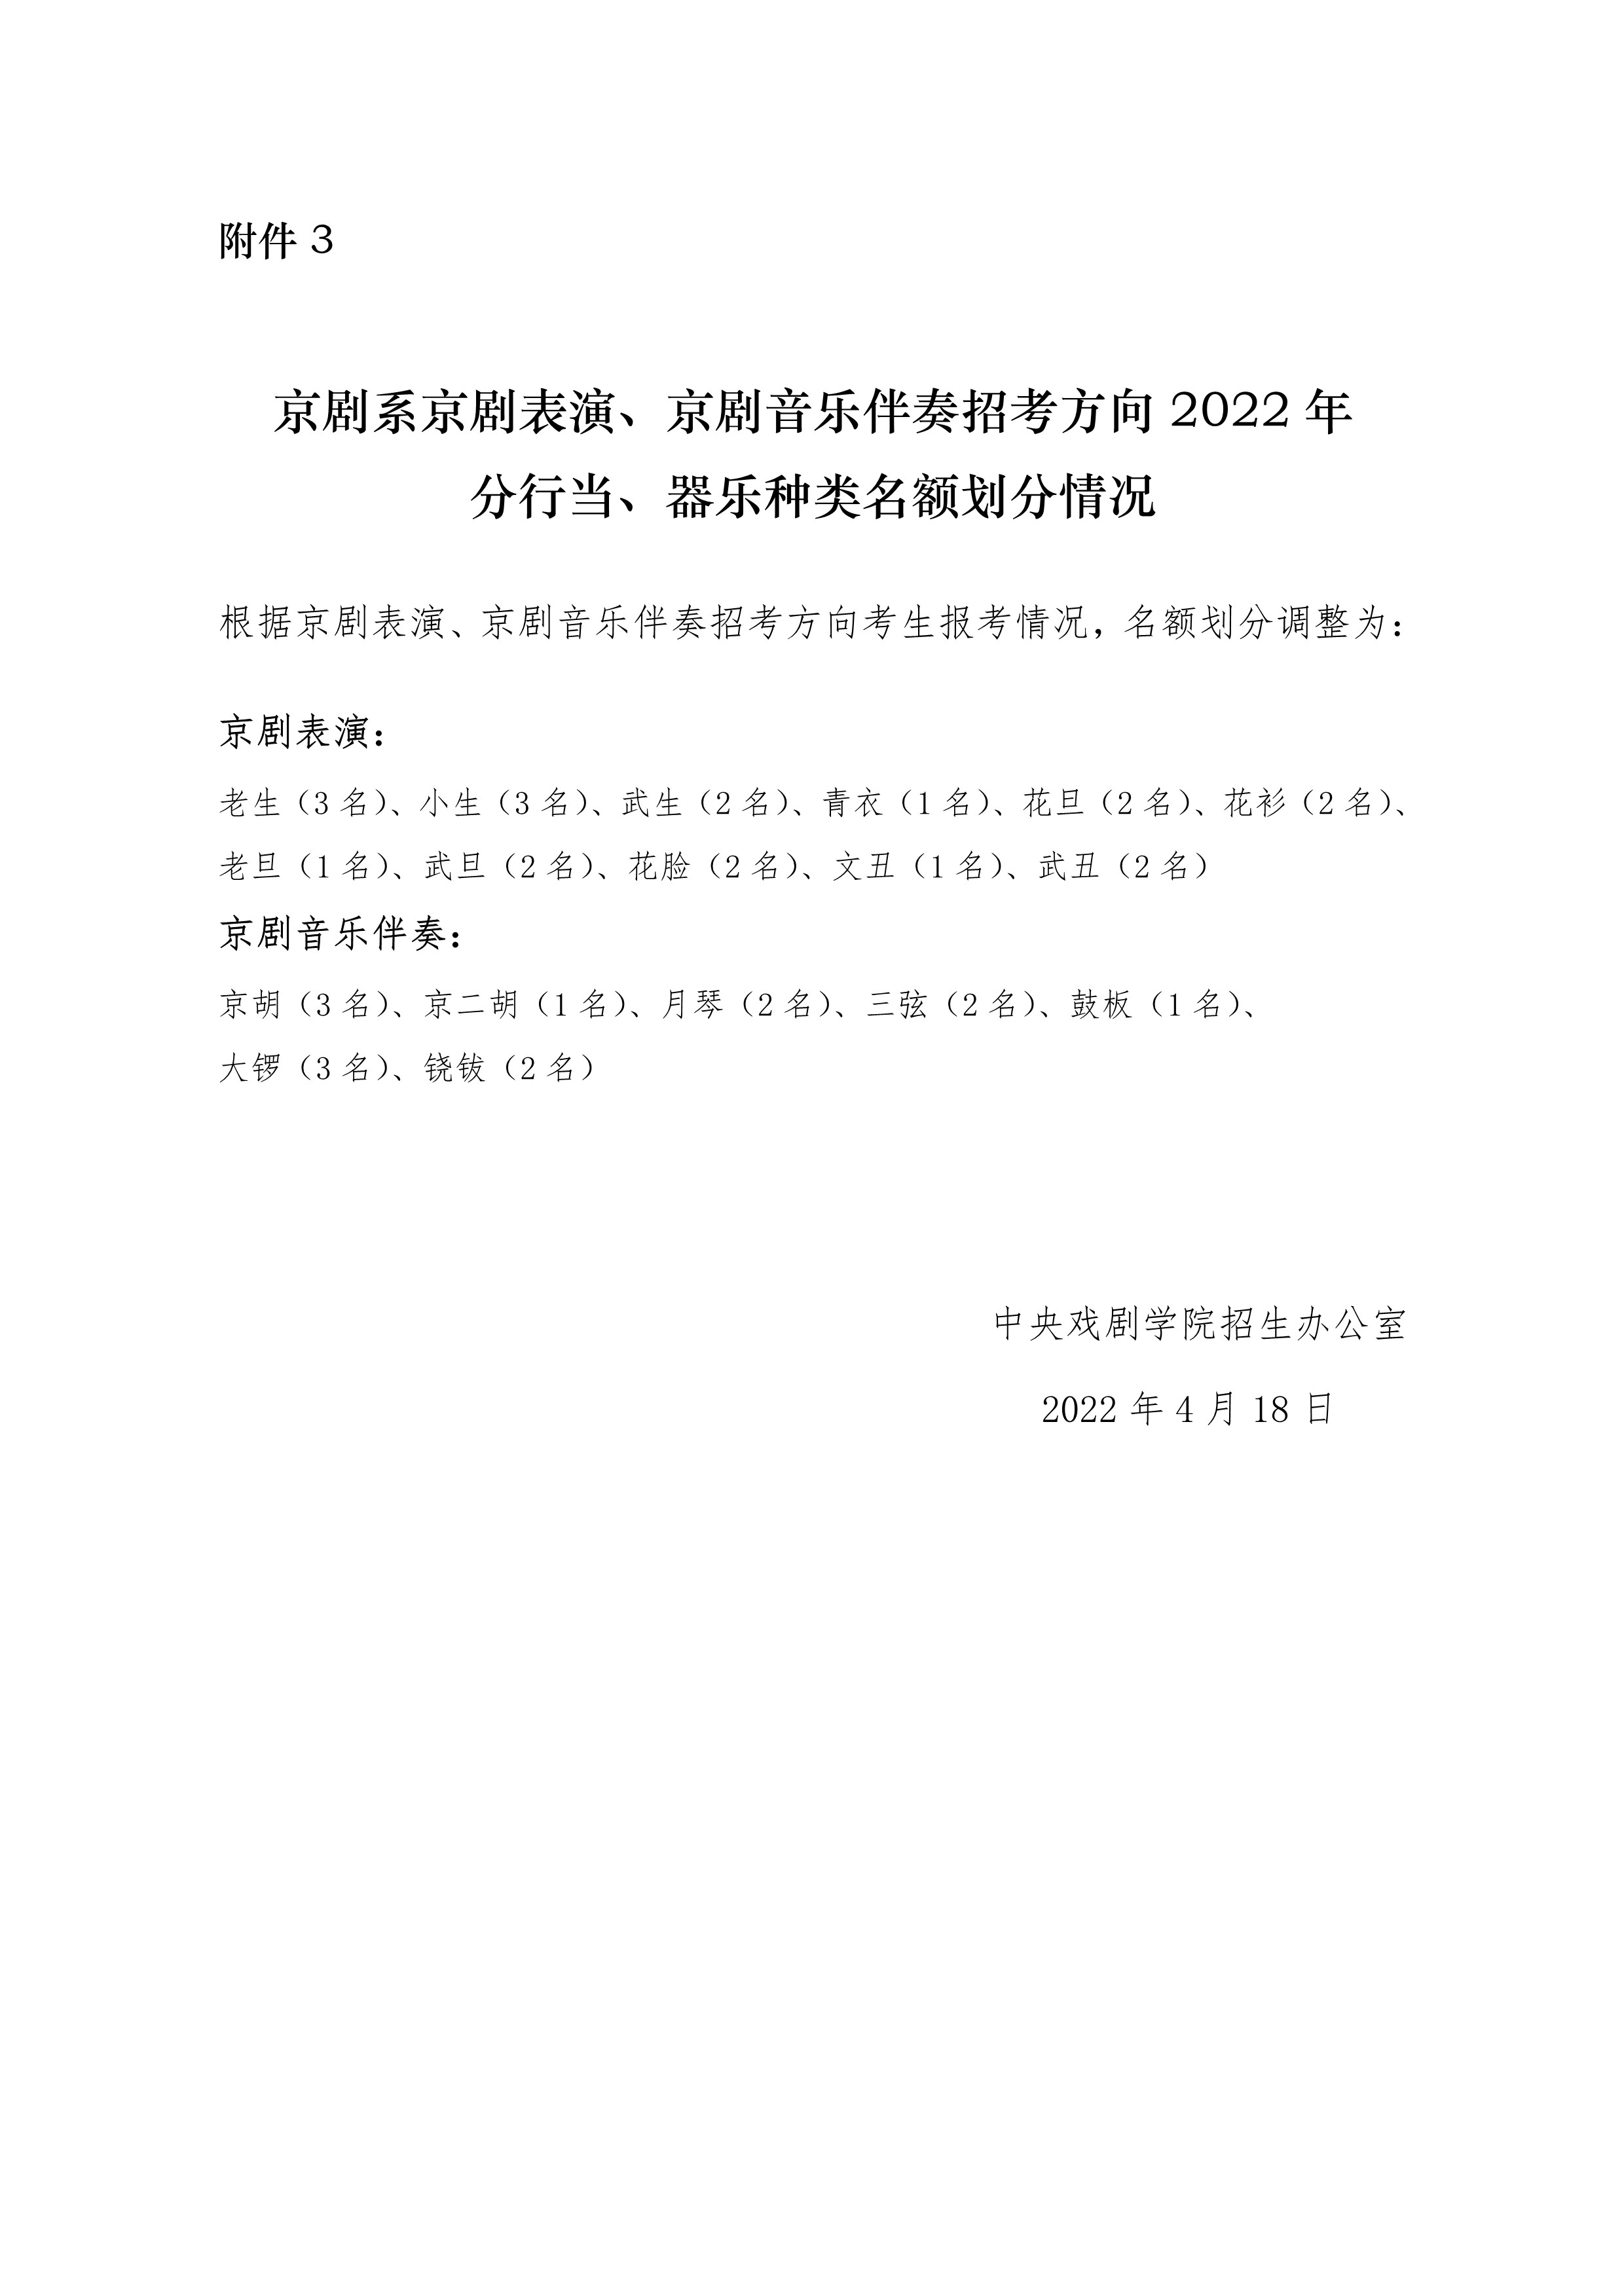 附件3：京剧系2022年分行当、器乐种类名额划分情况_1.jpg